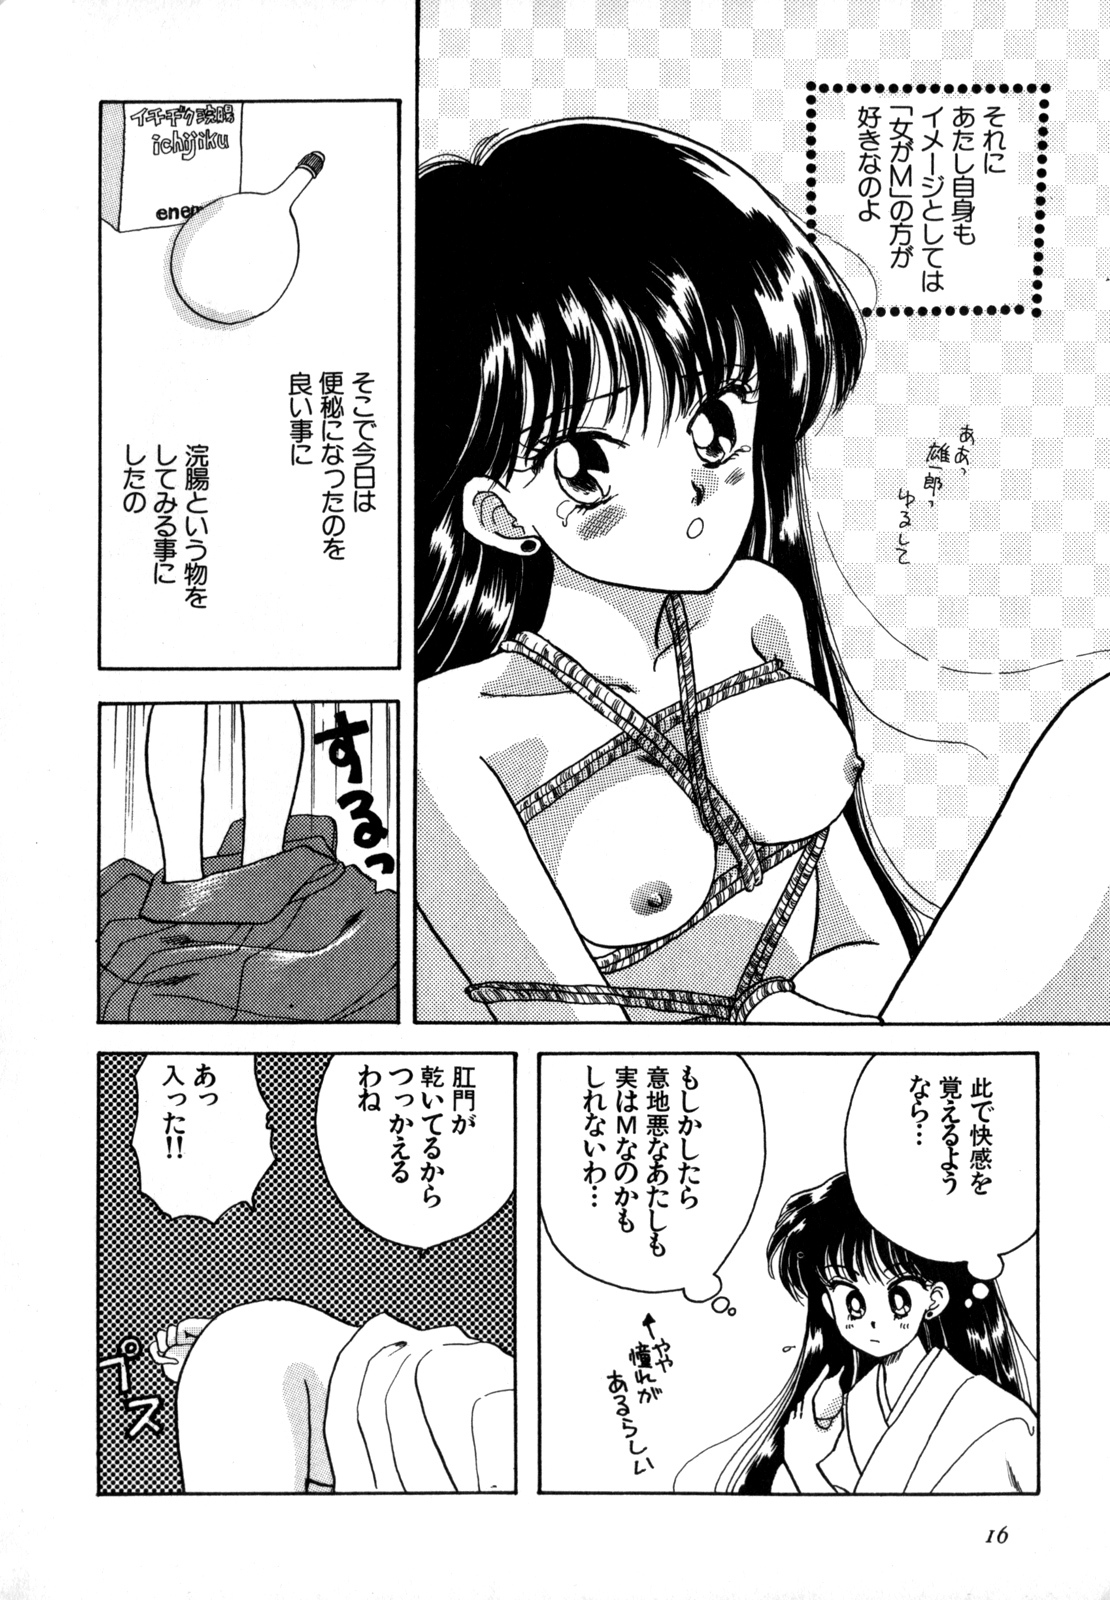 [Anthology] Lunatic Party 4 (Bishoujo Senshi Sailor Moon) page 17 full